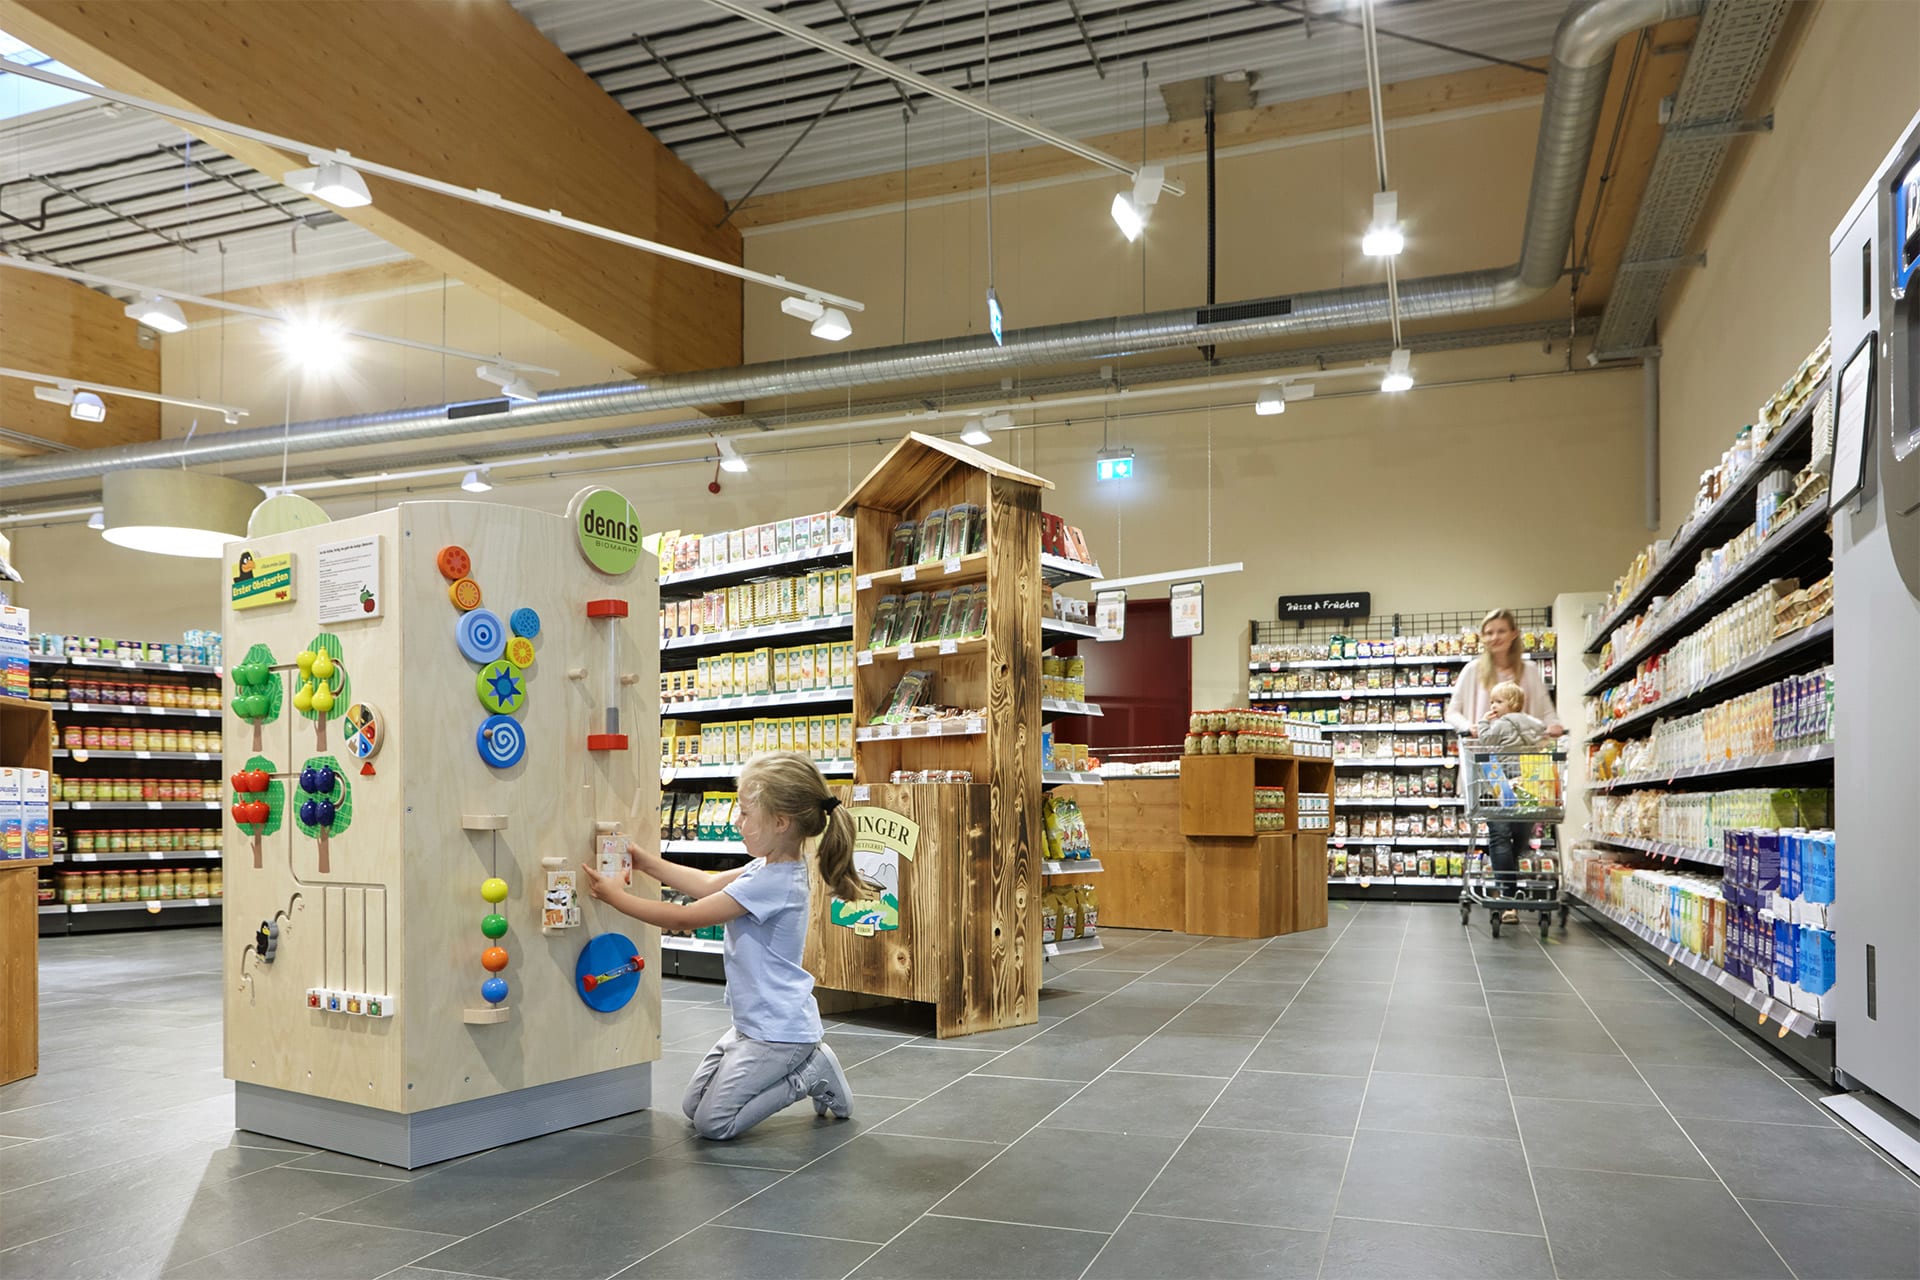 Branchen | Business | Verkaufsfläche Kind spielt an einem großen Spielwürfel Mutter mit Einkaufswagen im Bildhintergrund